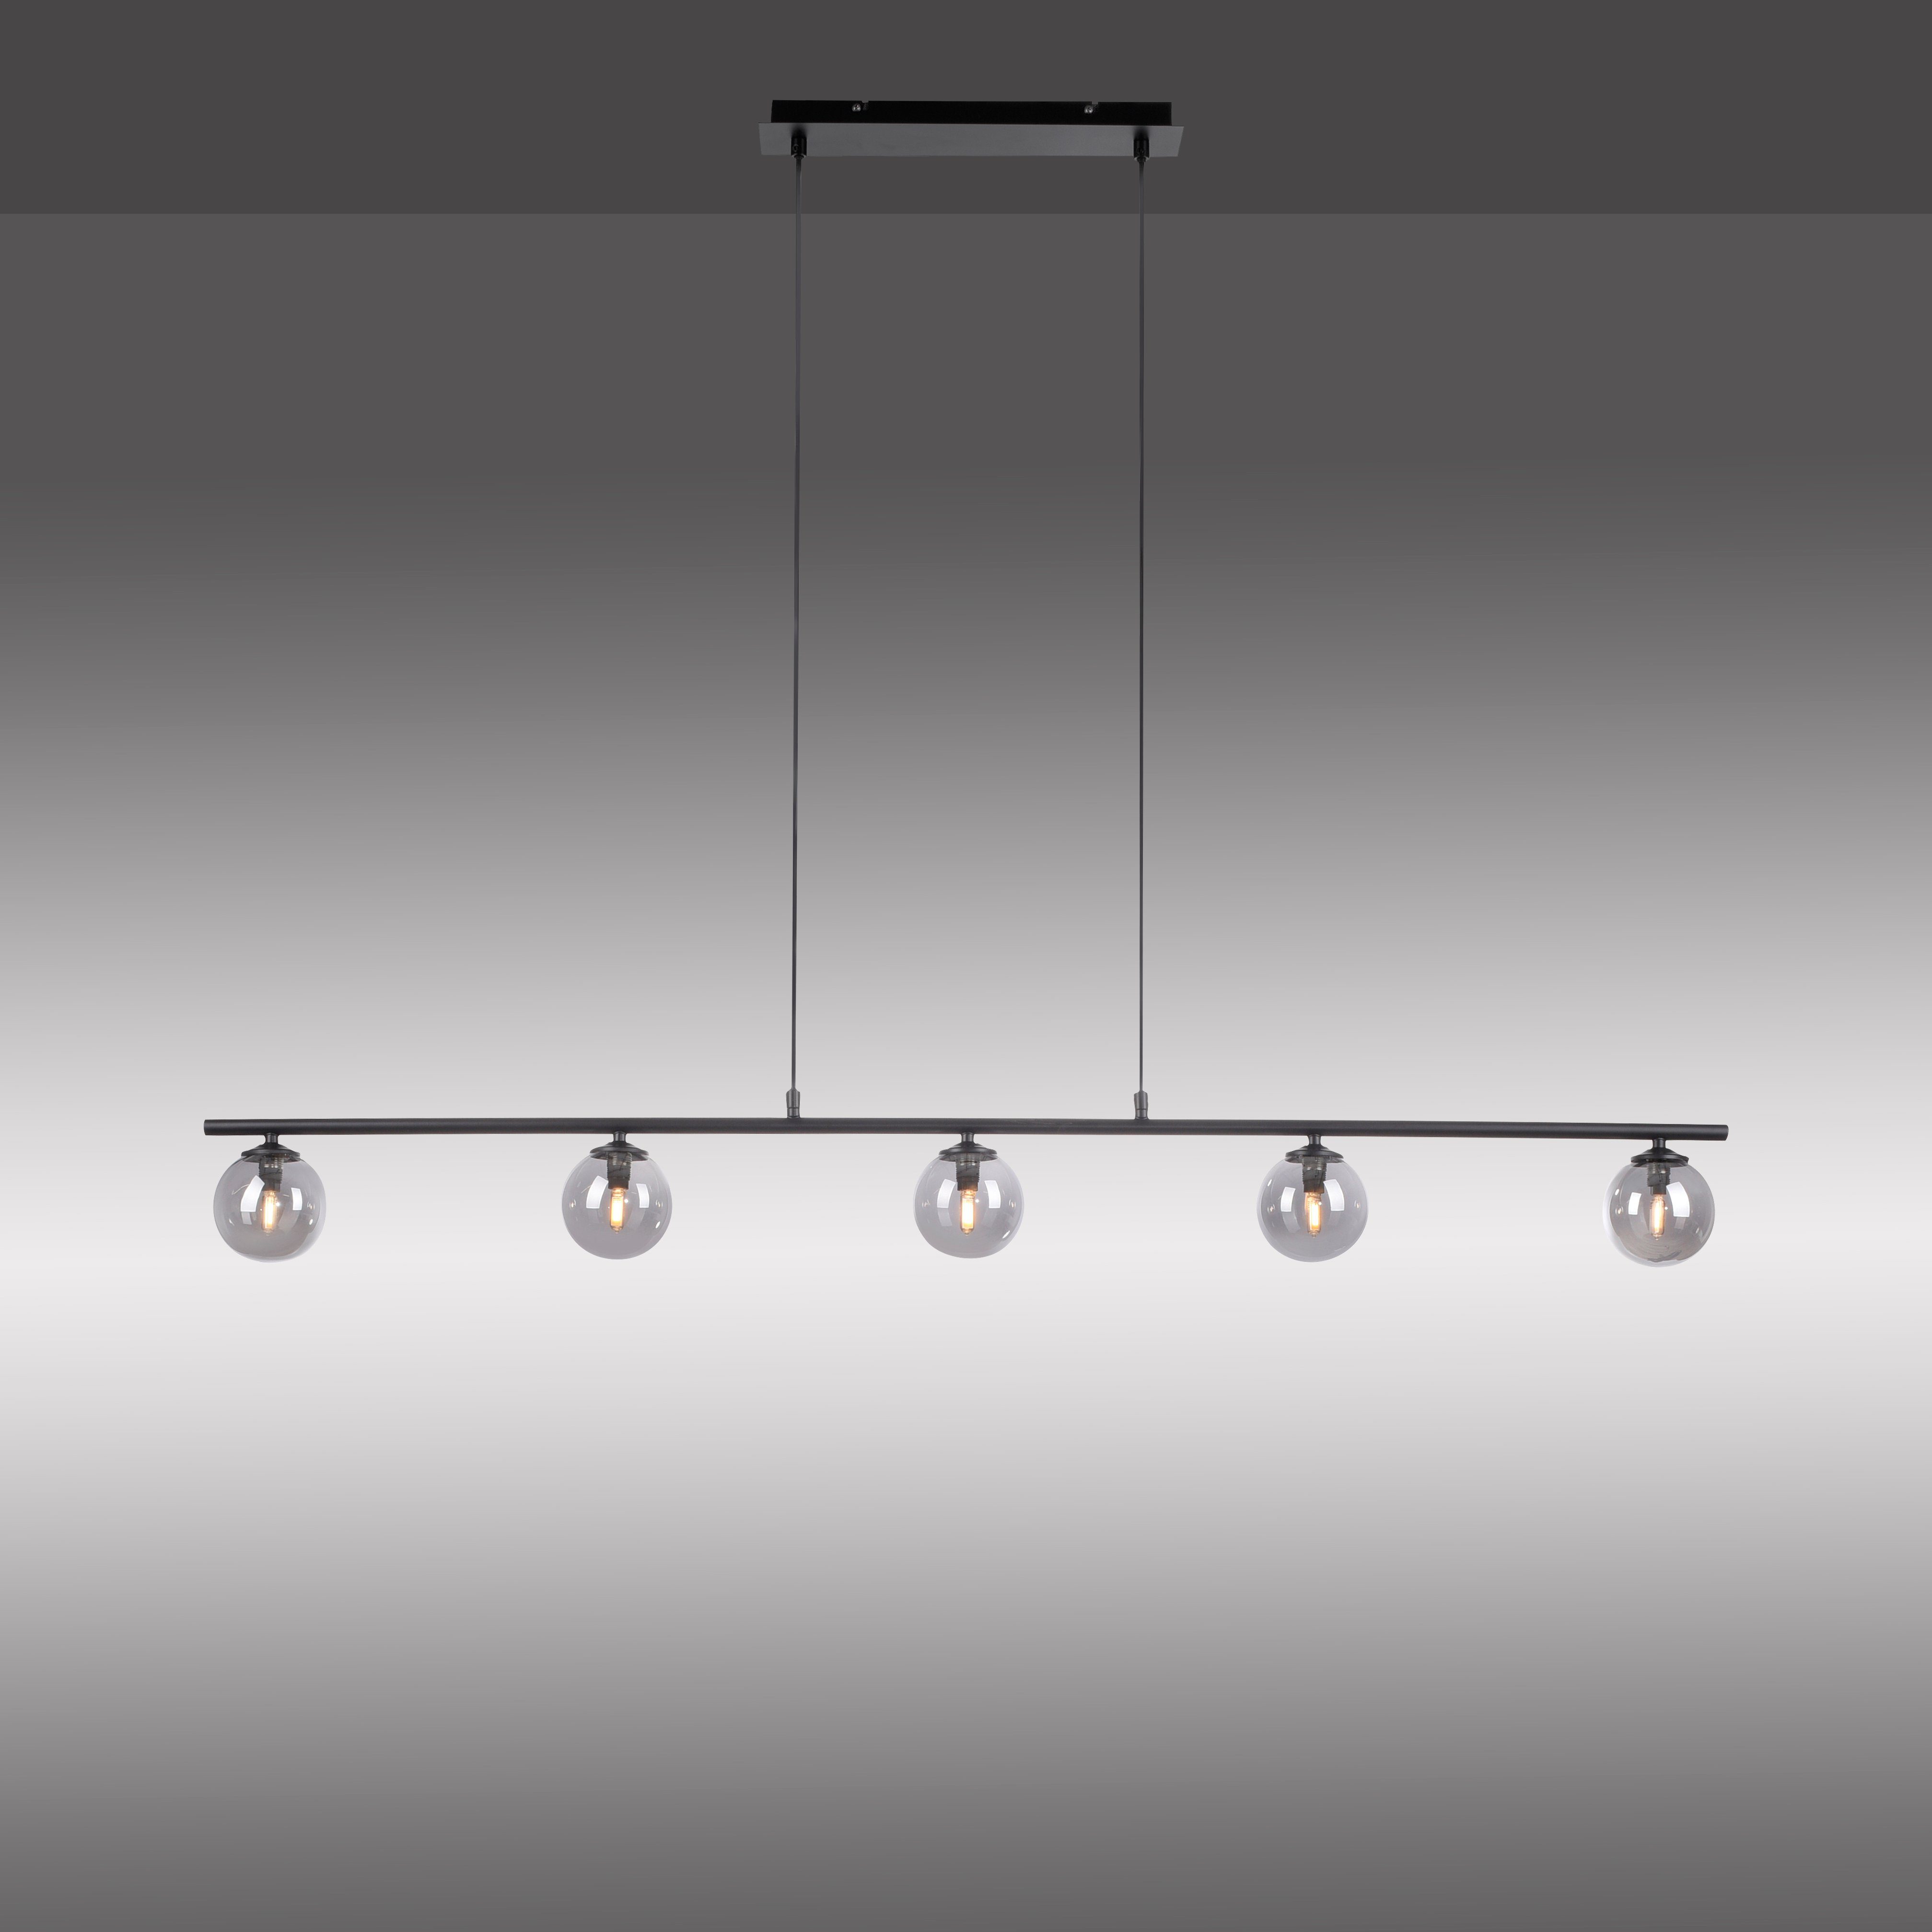 Paul Neuhaus LED Deckenleuchte WIDOW, LED wechselbar, Warmweiß, LED,  Inklusive Leuchtenschirmen in rauchfarbenem Glas